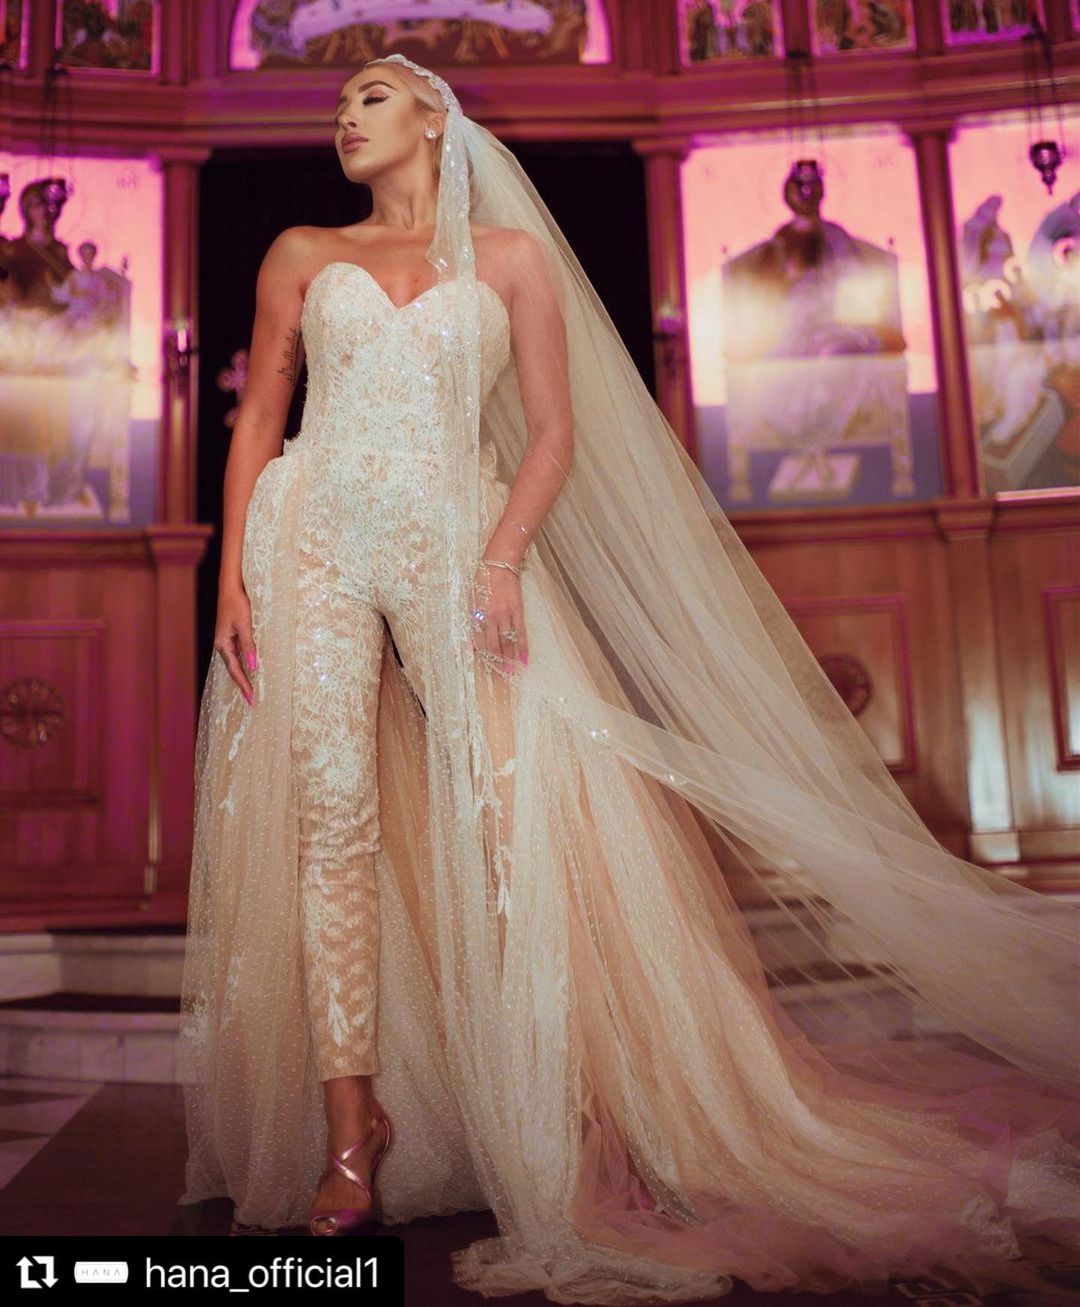 Falak-Afza Luxury White Wedding Dress